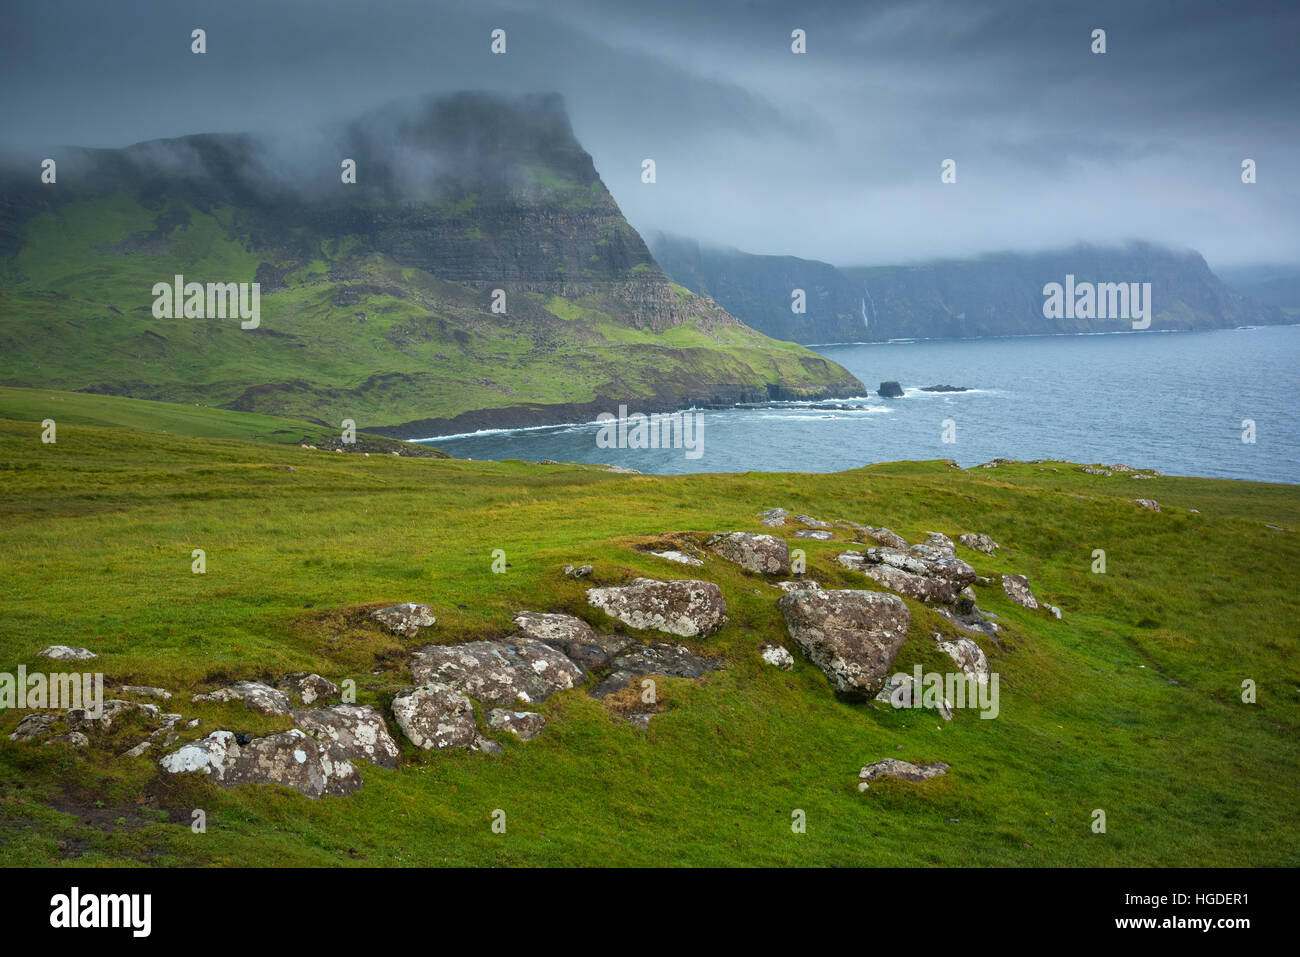 Scotland, Hebrides archipelago, Isle of Skye, Stock Photo